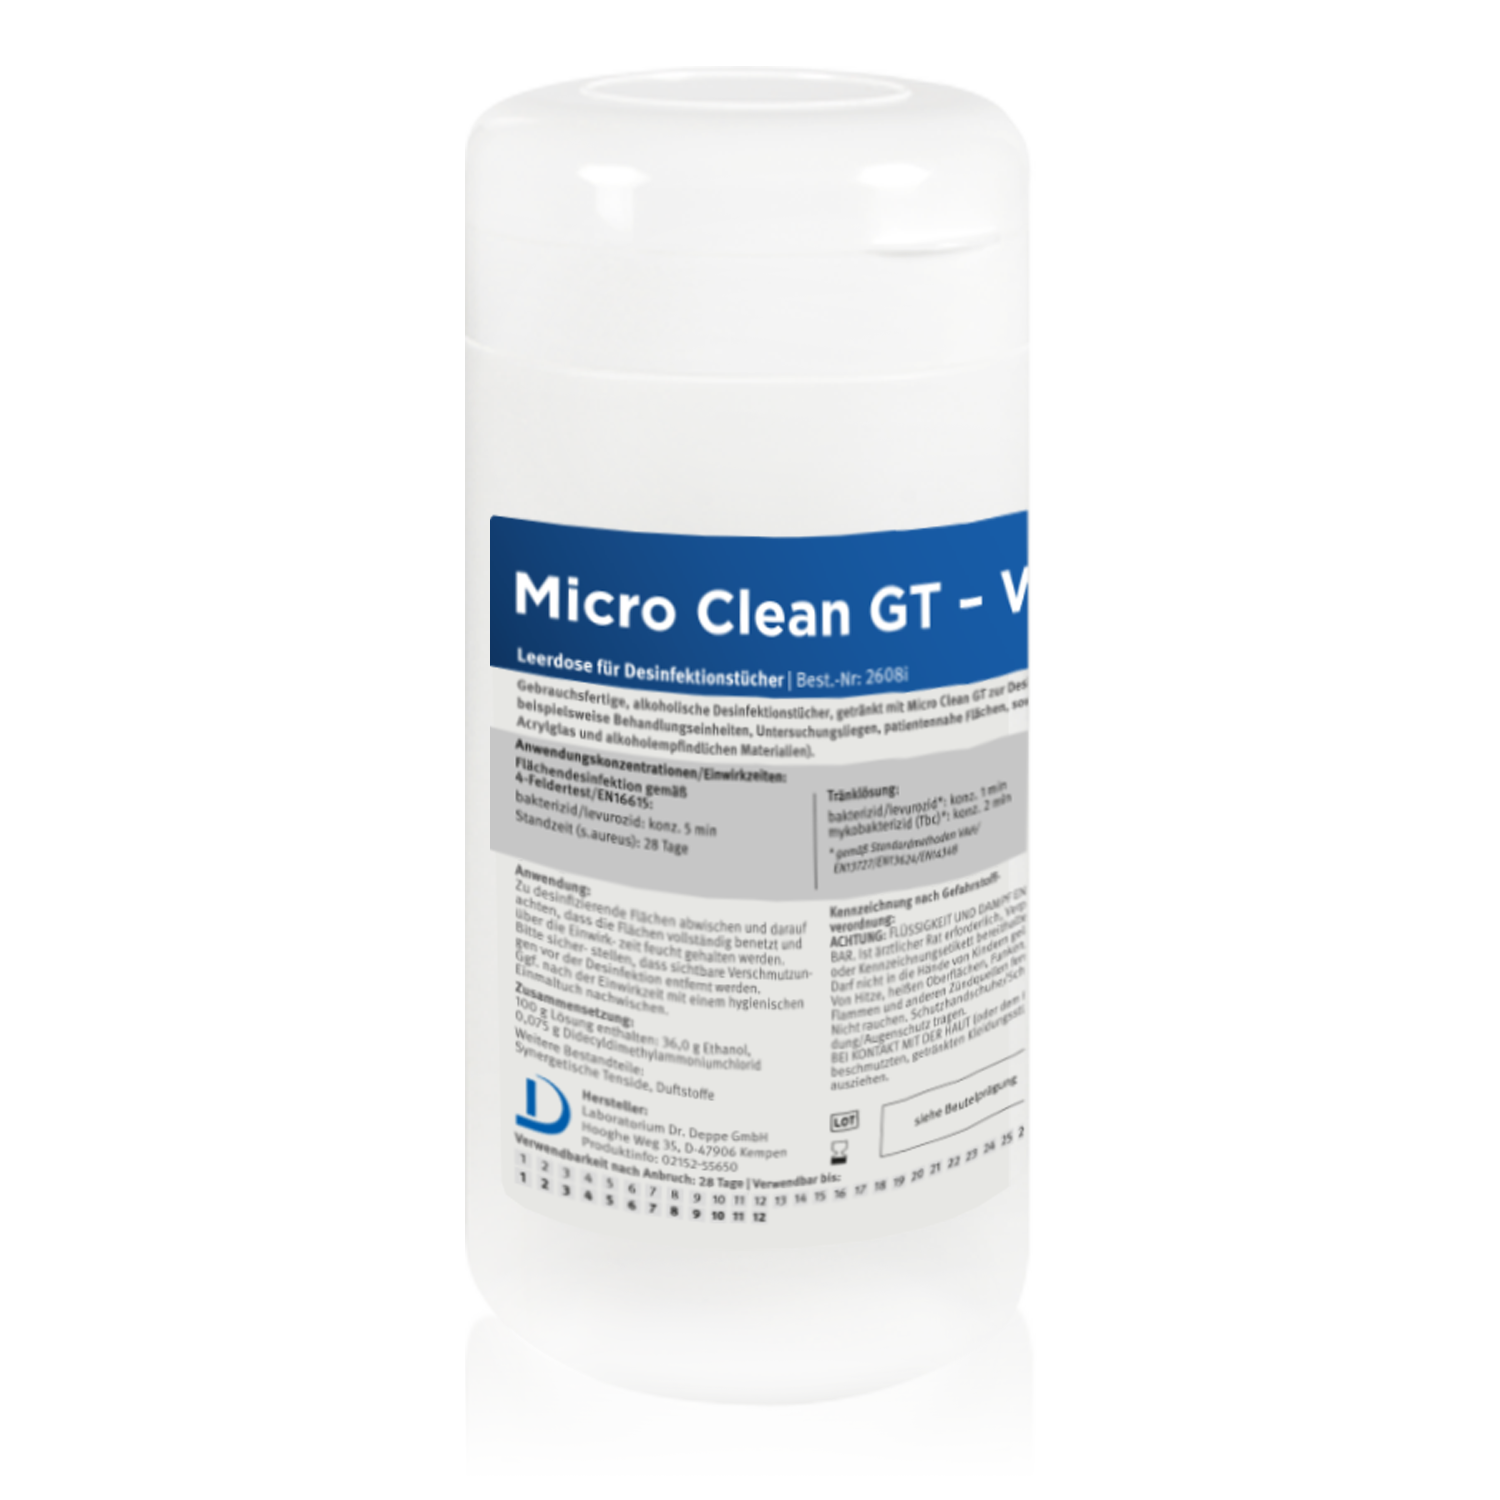 Micro Clean GT Wipes Universal Leerdose